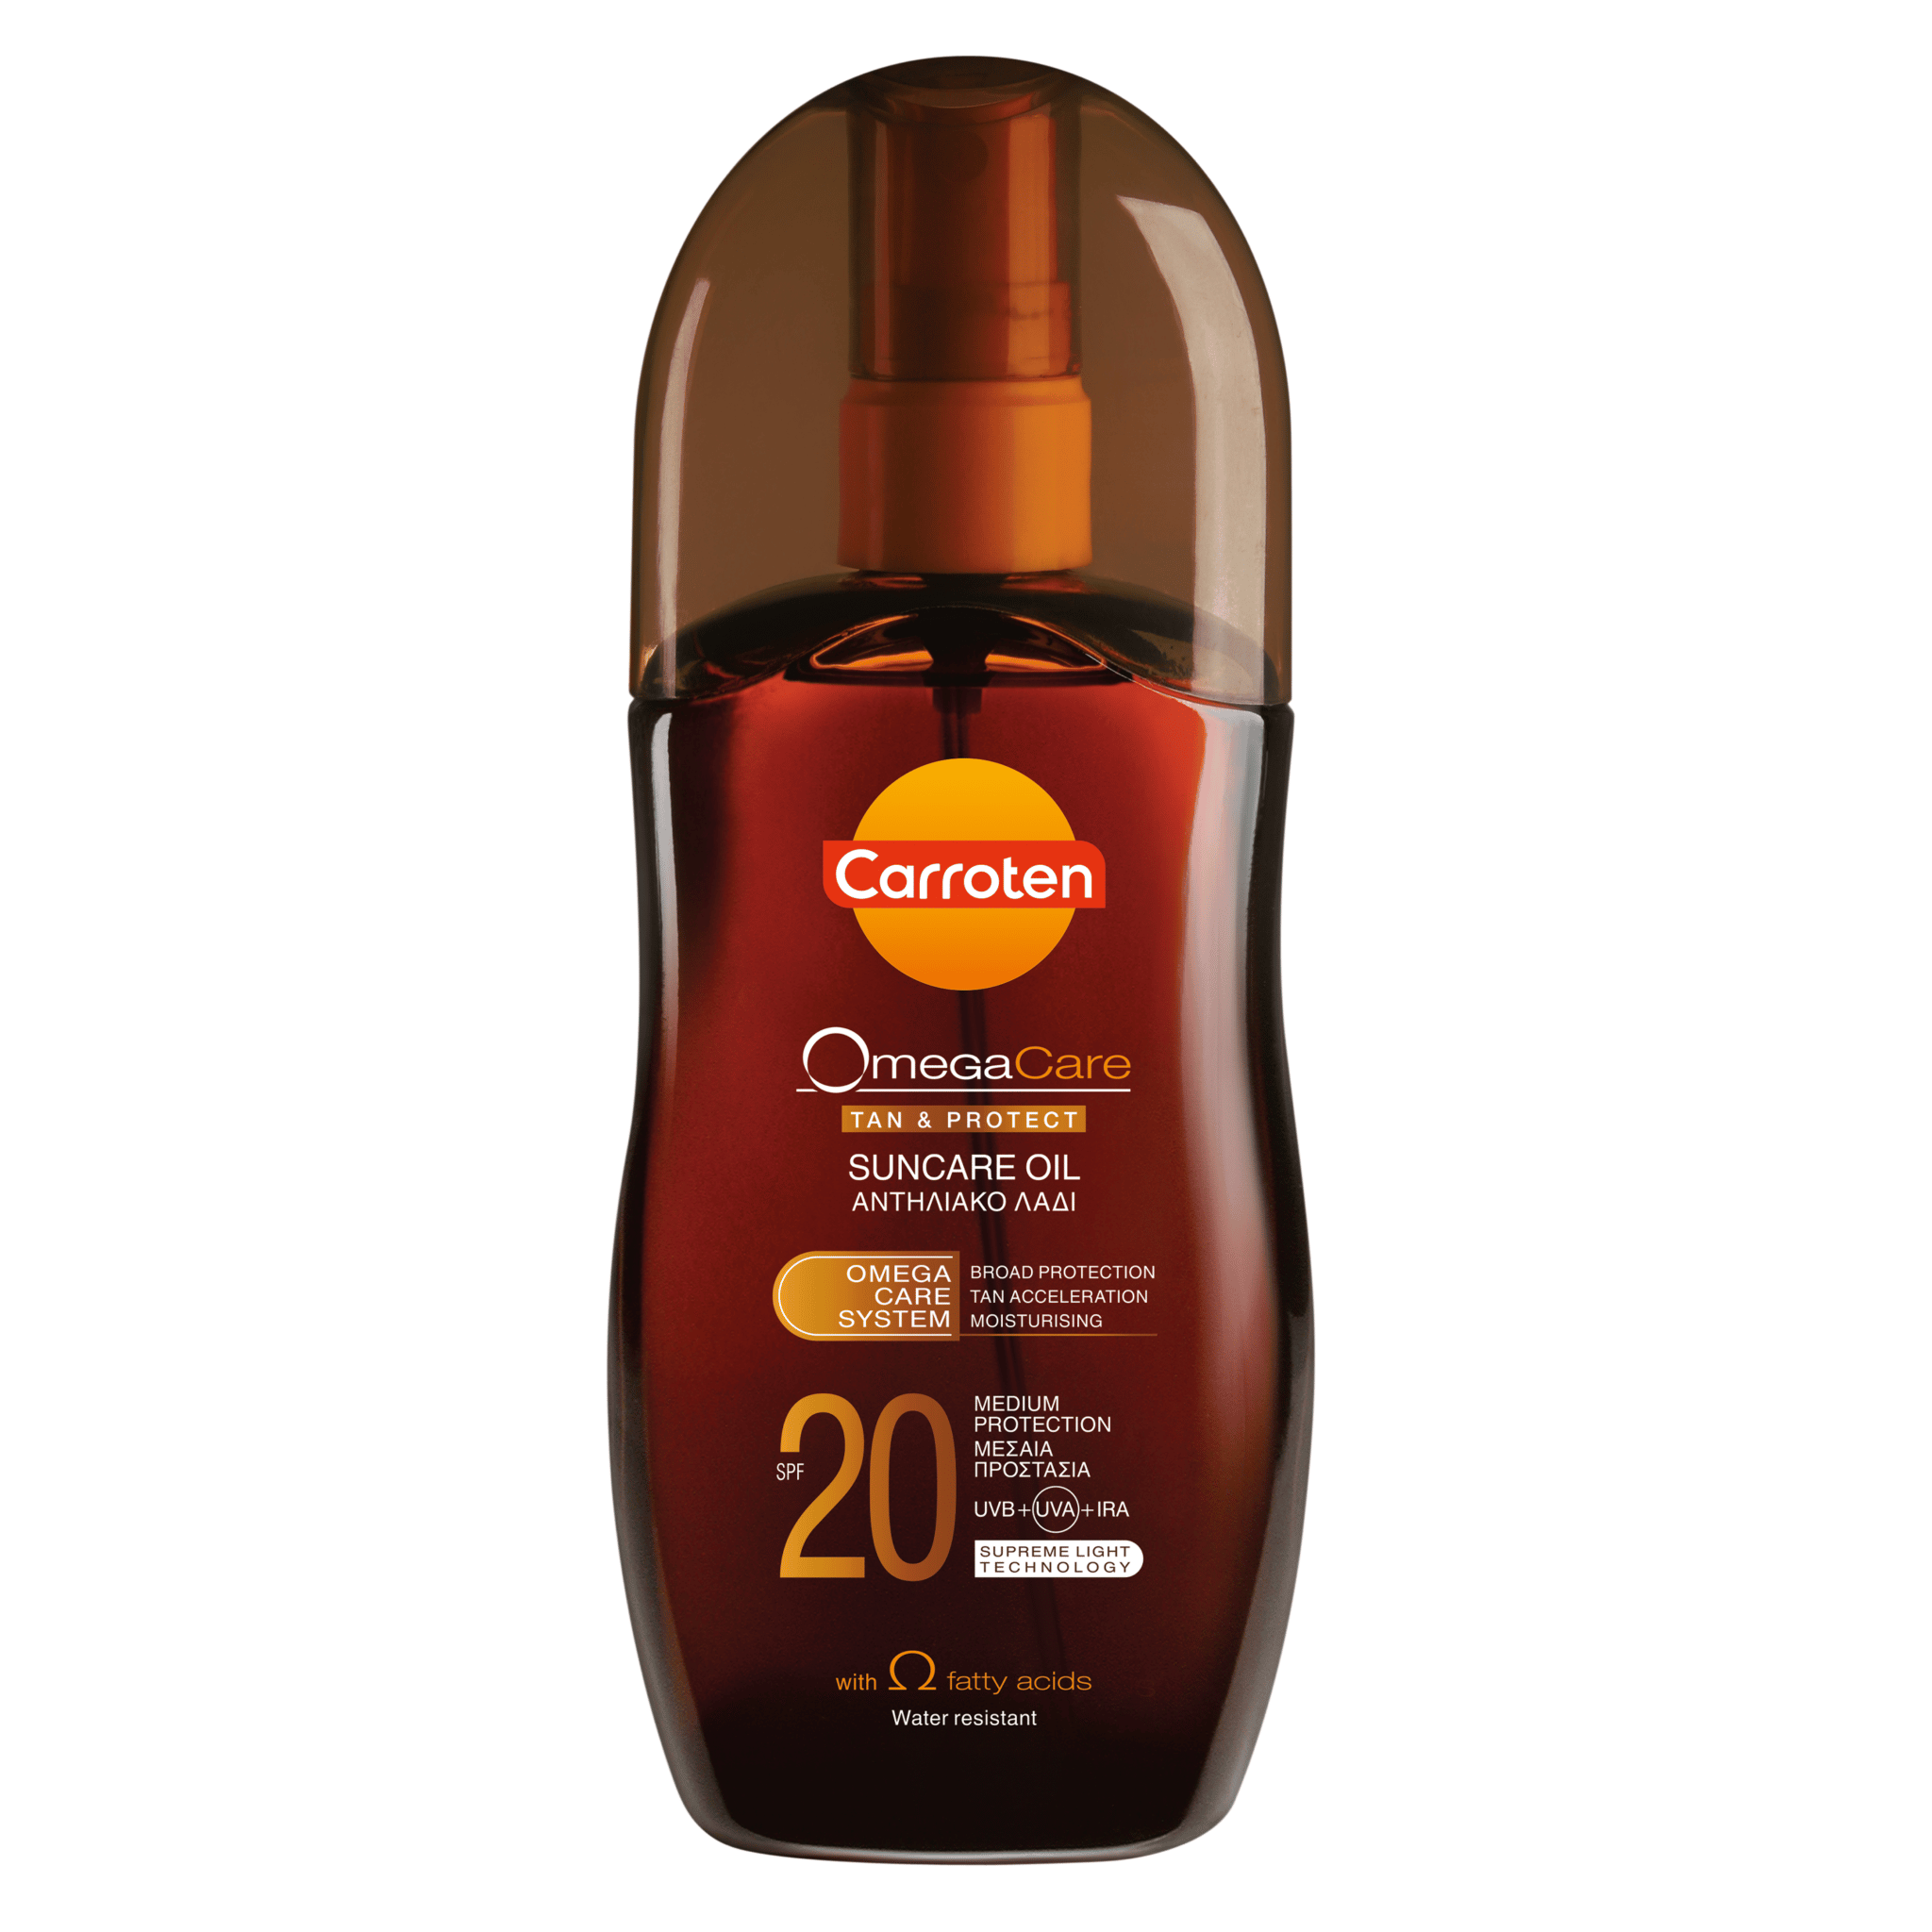 Carroten sunscreen oil omega care SPF 20 125ml